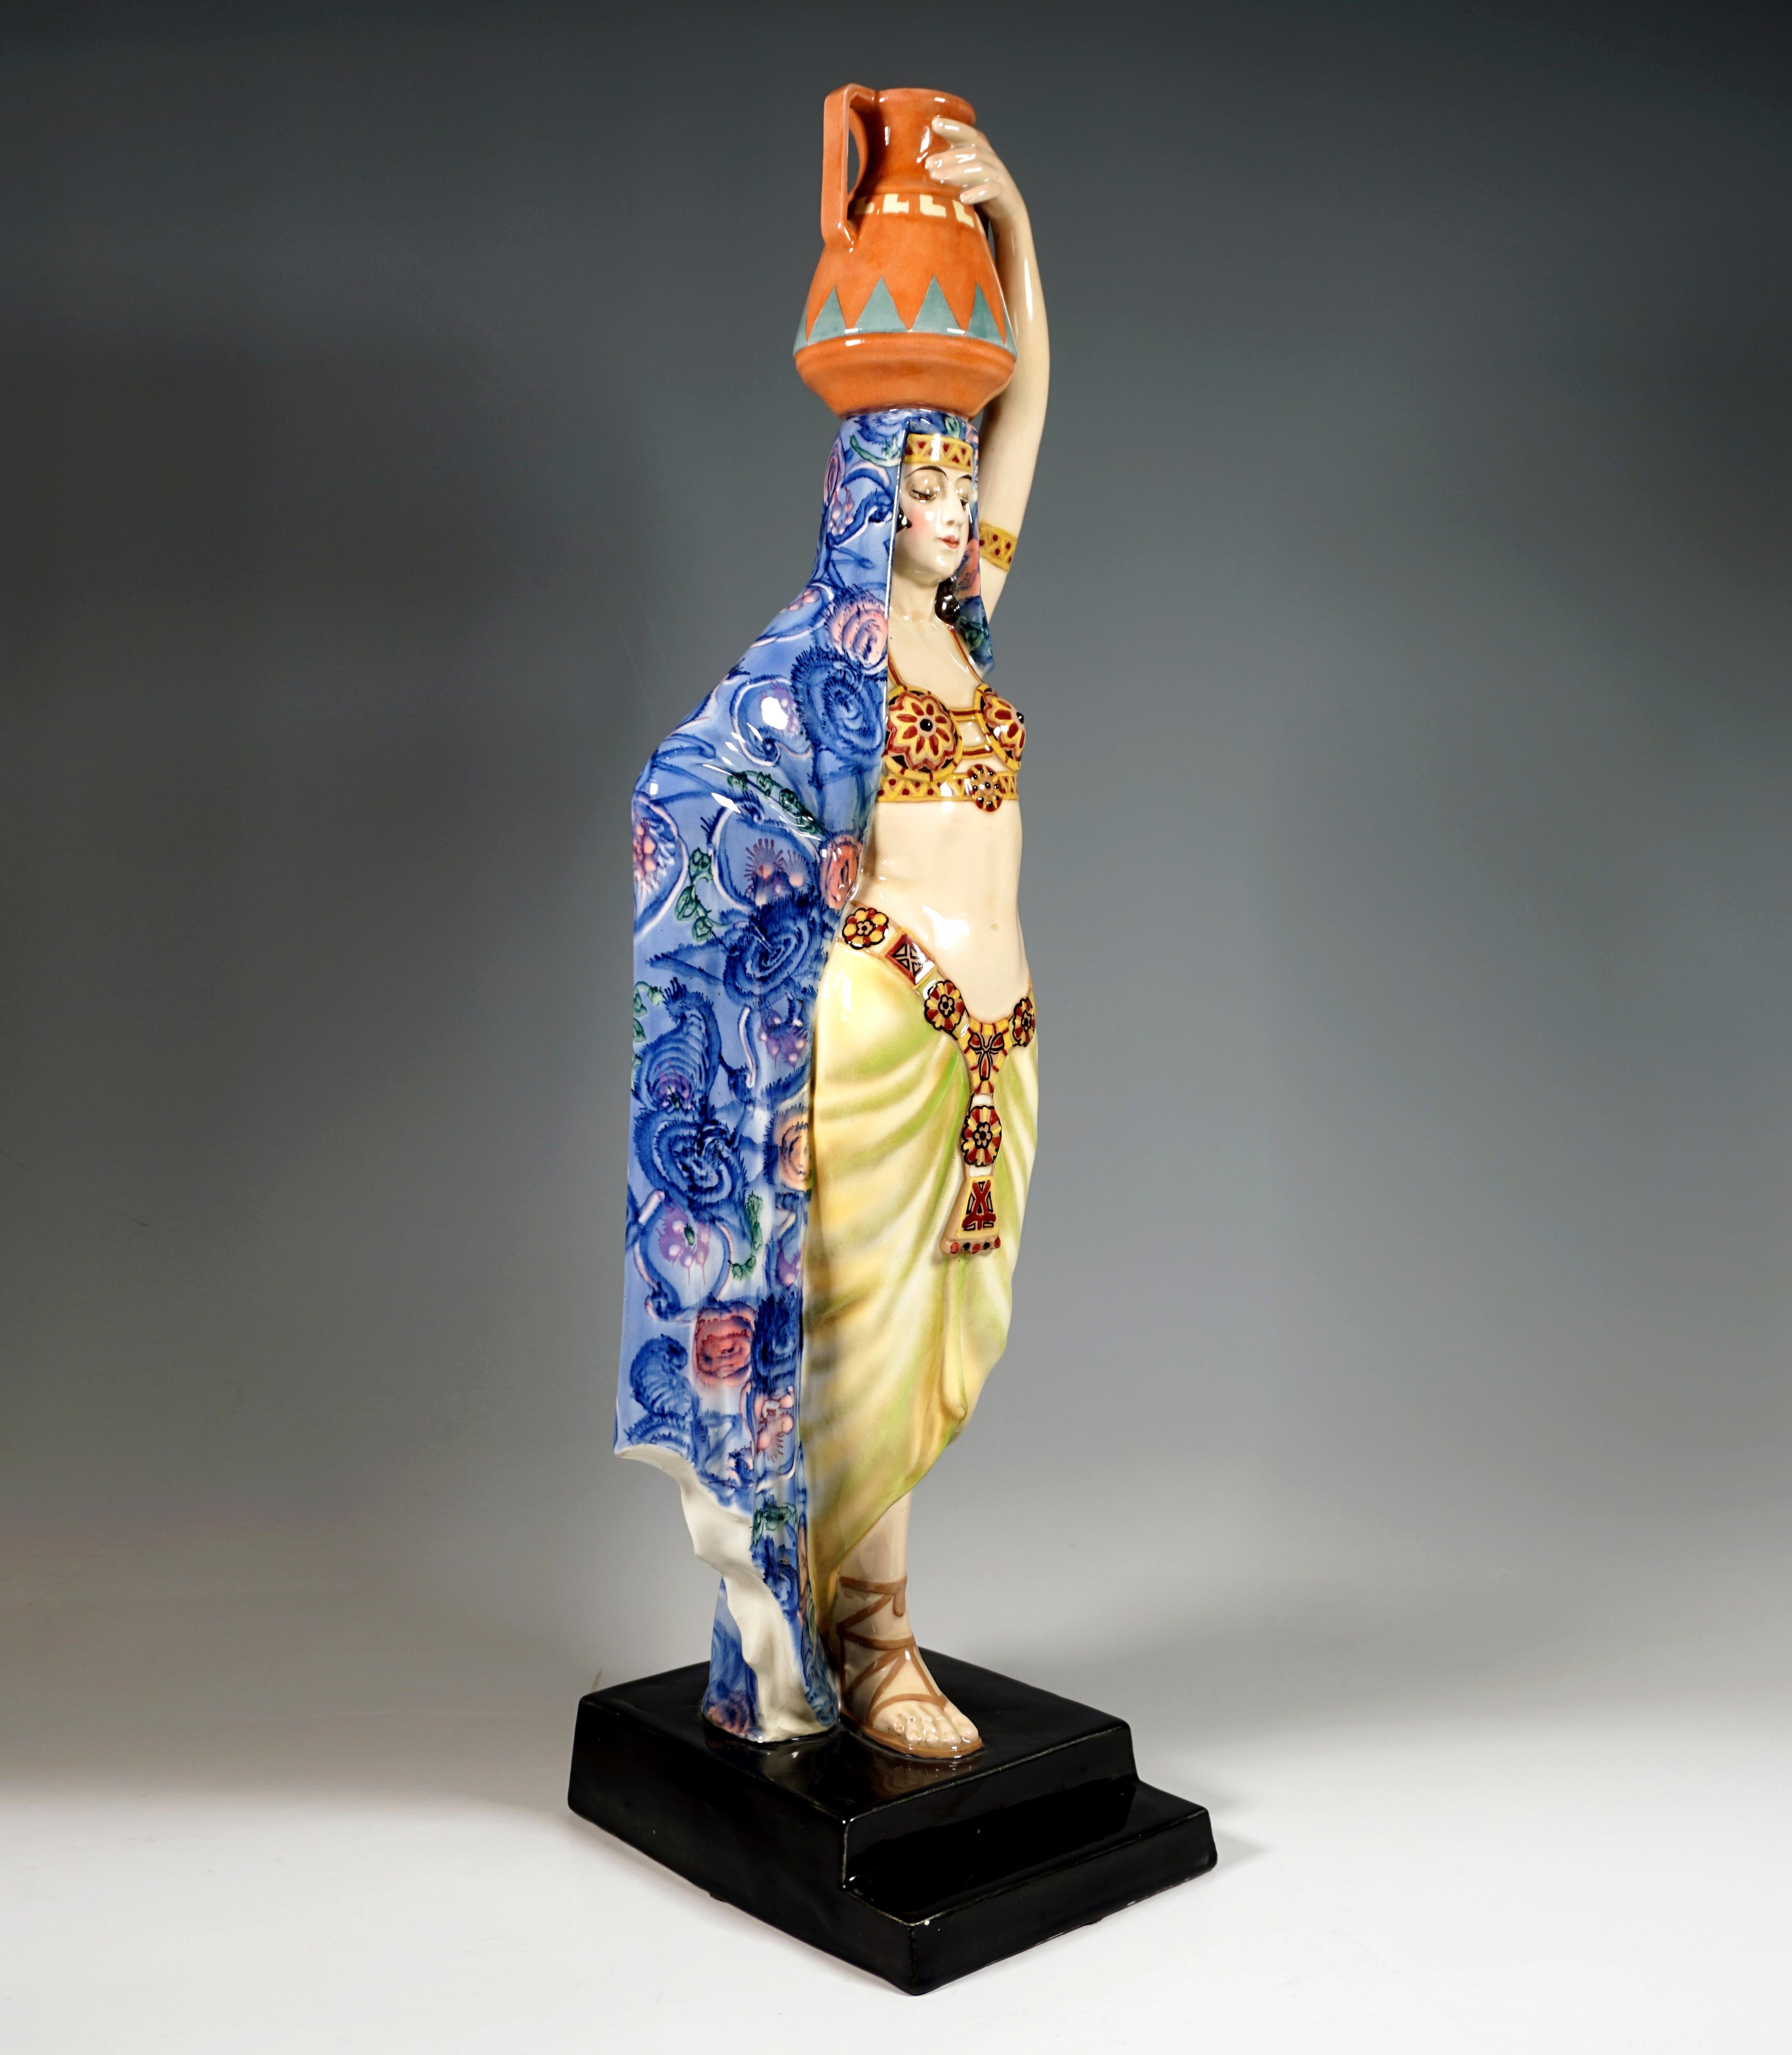 Sehr große und seltene Goldscheider Keramikfigur aus den 1920er Jahren: 
Schreitende anmutige junge Dame in orientalischer Kleidung, eine Amphore auf dem Kopf balancierend, das zarte, im Wesentlichen aus zwei verzierten Körbchen bestehende und durch